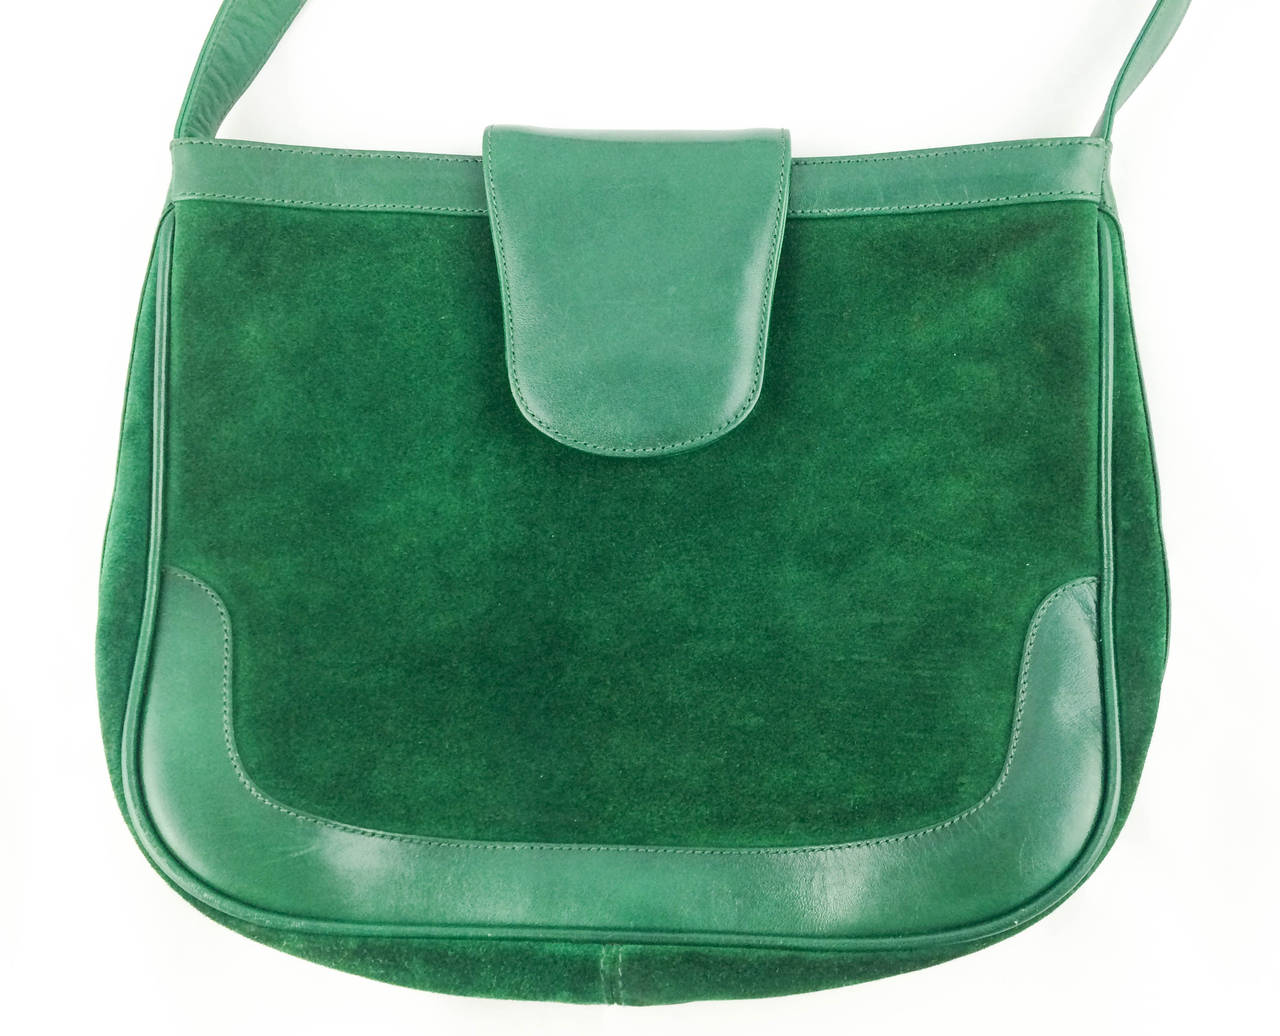 Women's Rare Gucci Emerald Green Shoulder Bag - 1970s